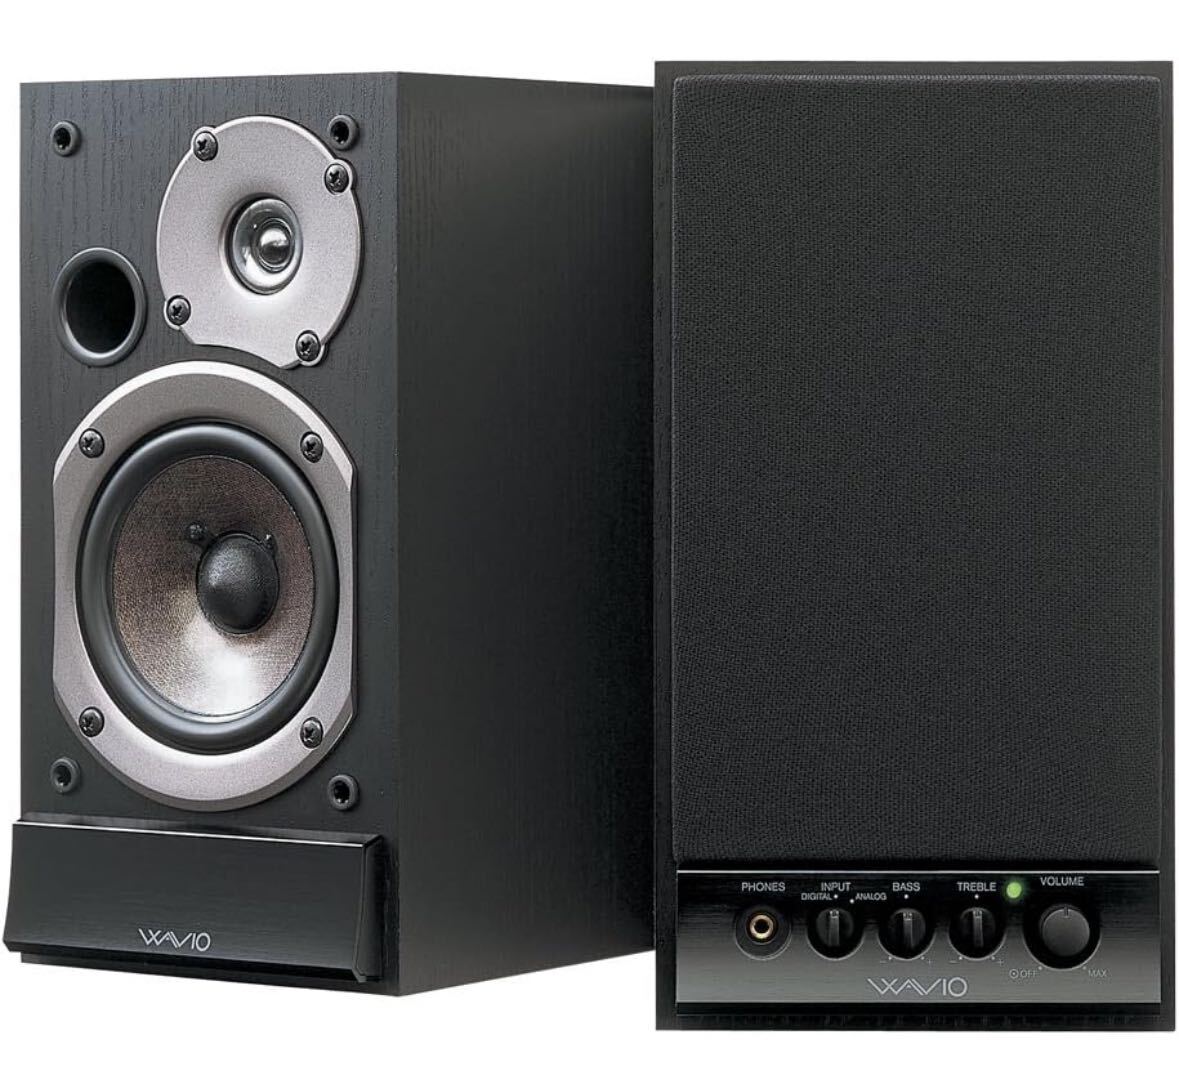 ONKYO WAVIO amplifier built-in speaker 15W+15W GX-D90(B) / black 